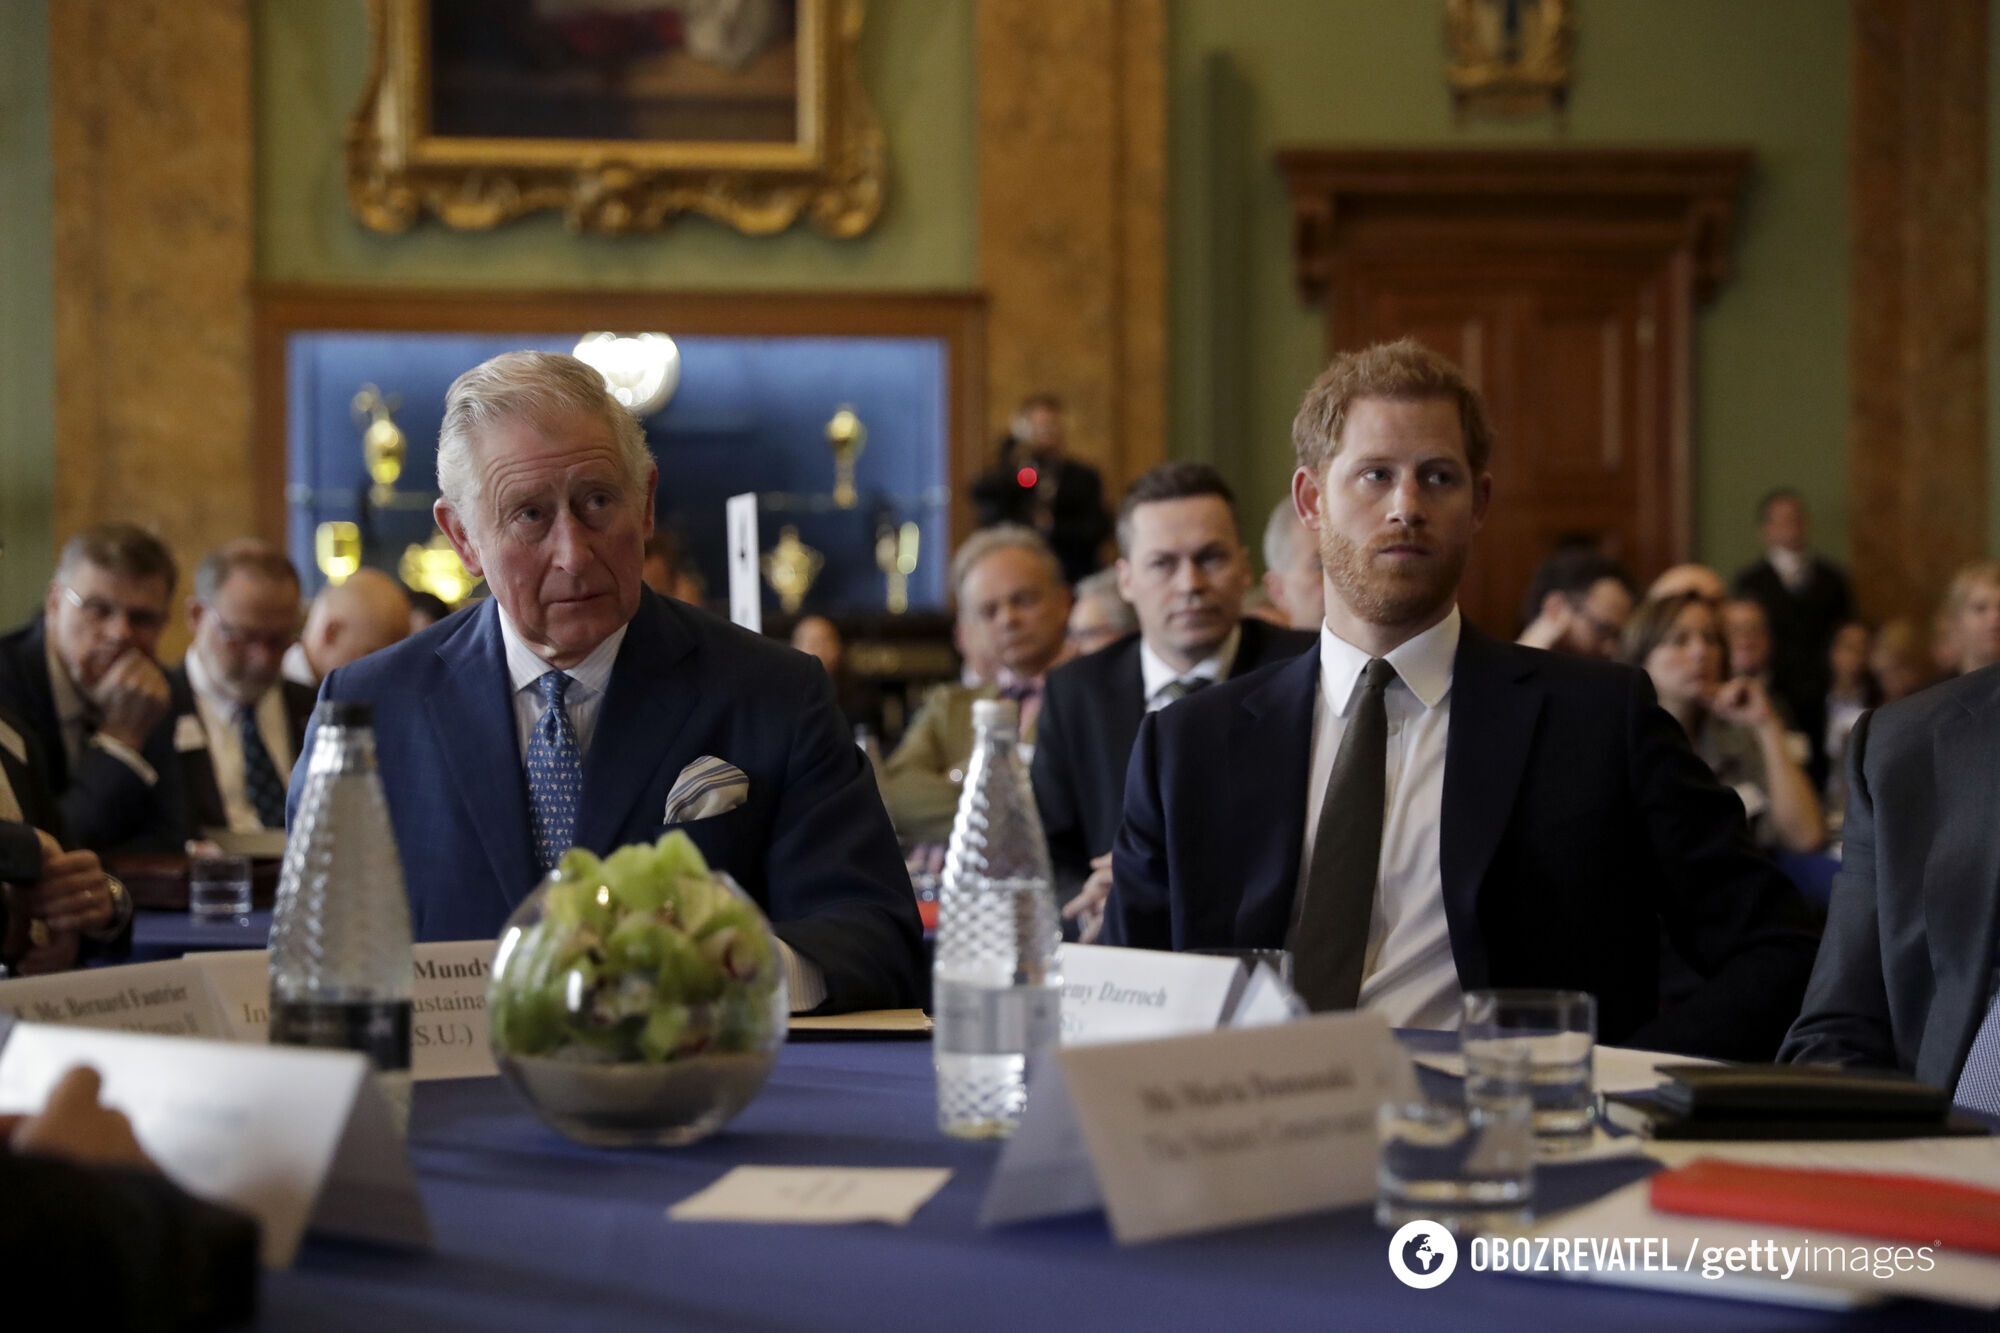 Książę Harry odmówił spotkania z królem Karolem III w Londynie: jaki jest prawdziwy powód?